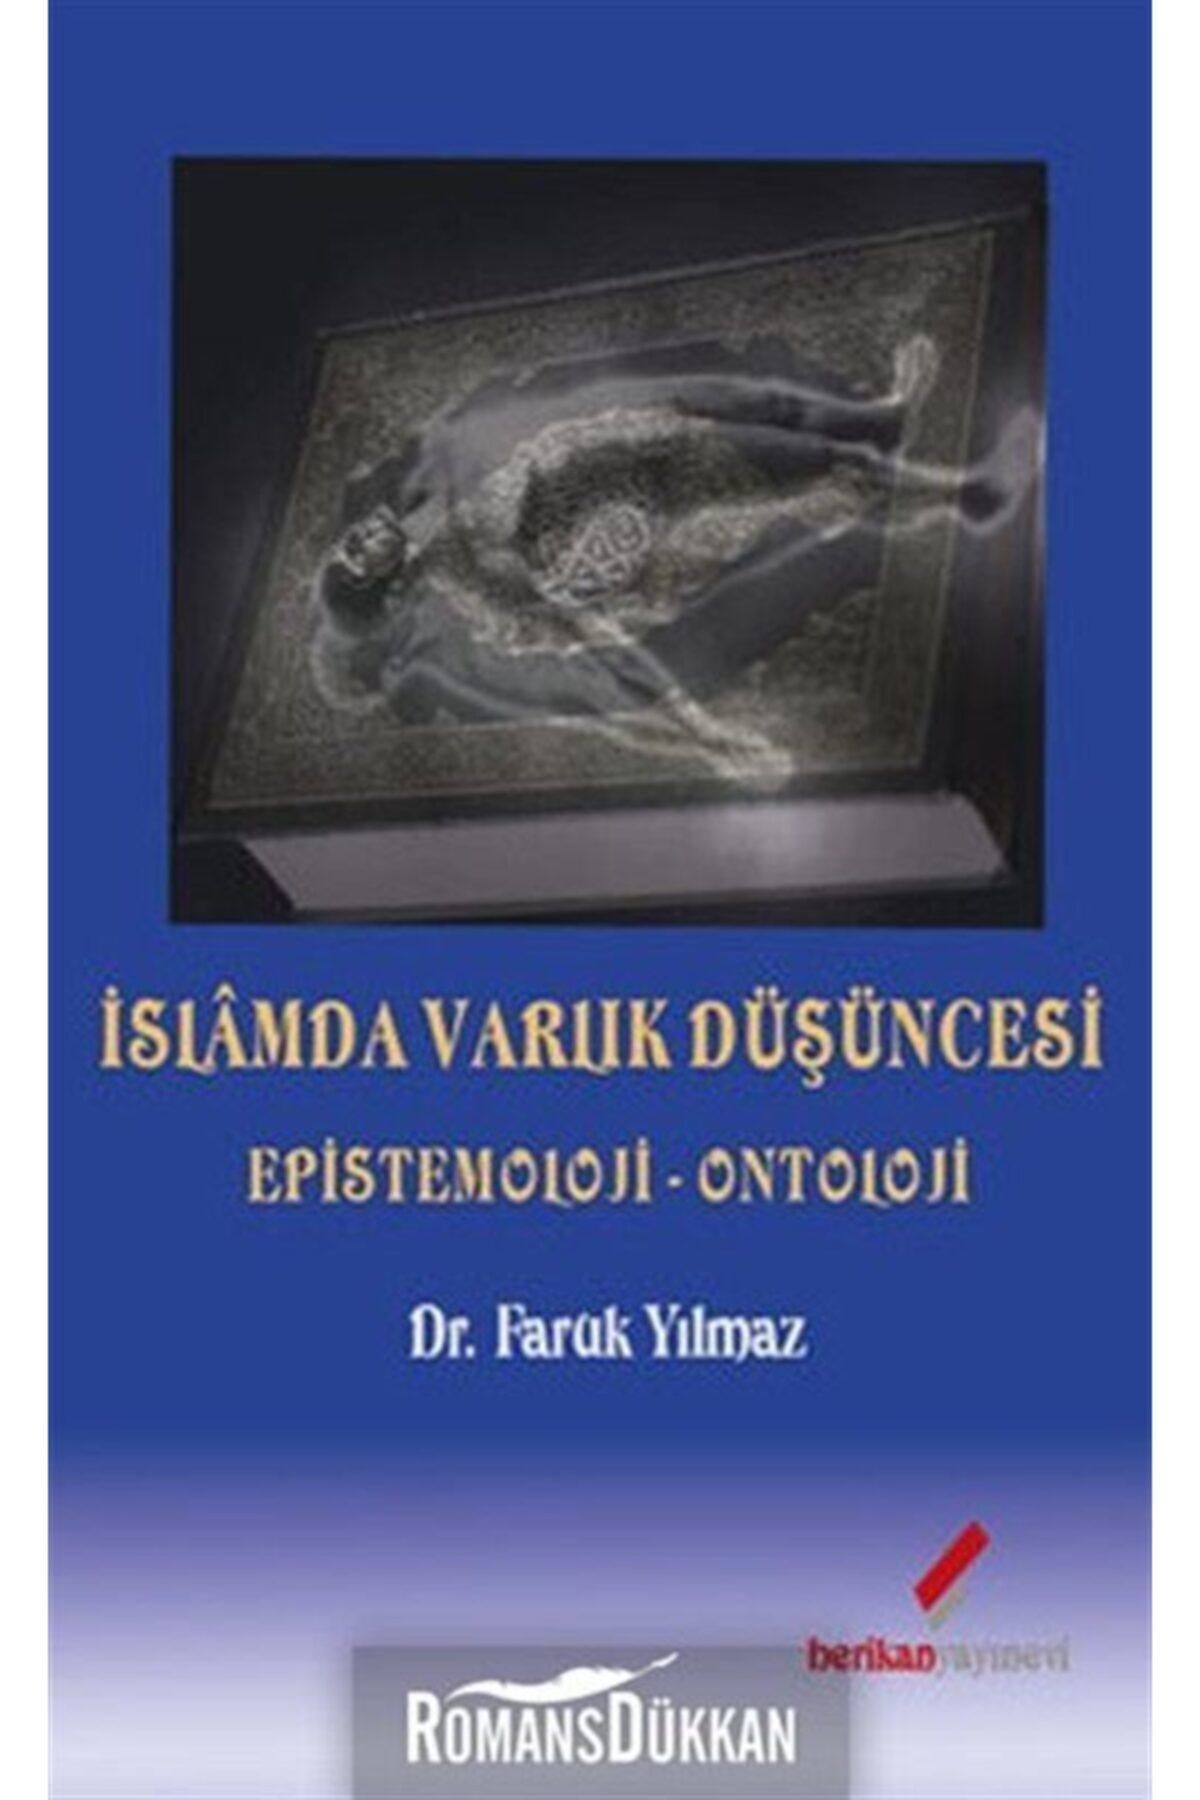 Berikan Yayınevi Islamda Varlık Düşüncesi & Epistemoloji-ontoloji - Faruk Yılmaz